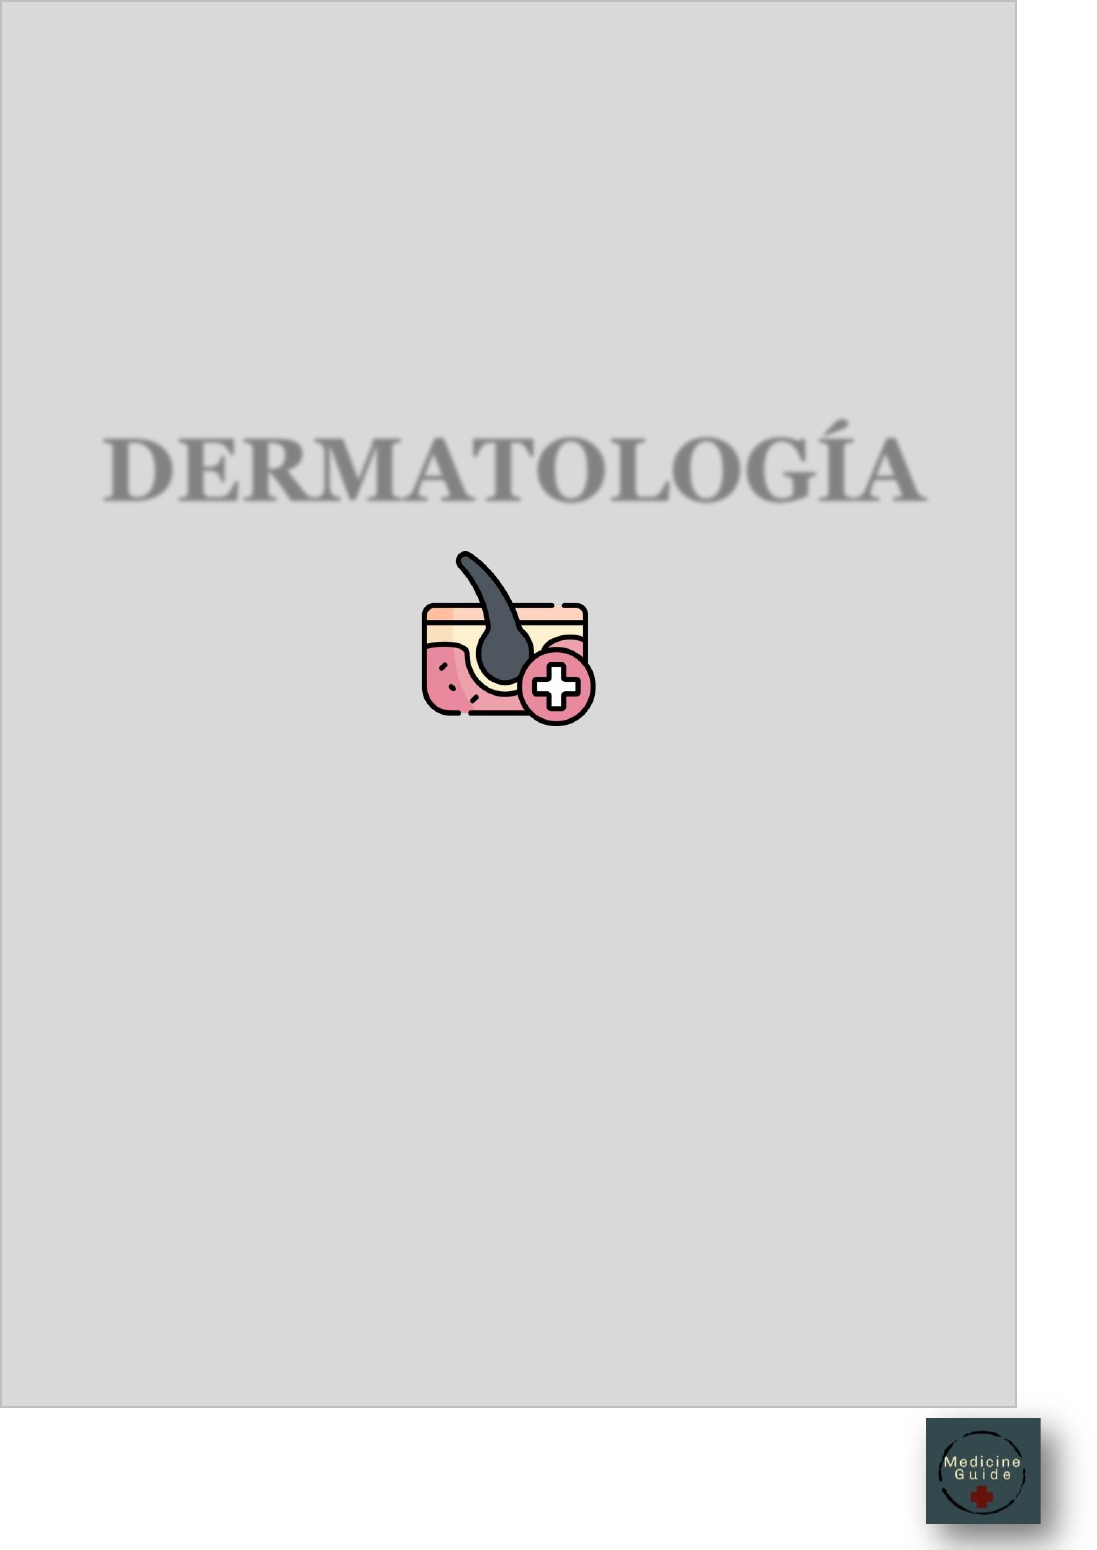 Sarna - Trastornos dermatológicos - Manual Merck versión para profesionales